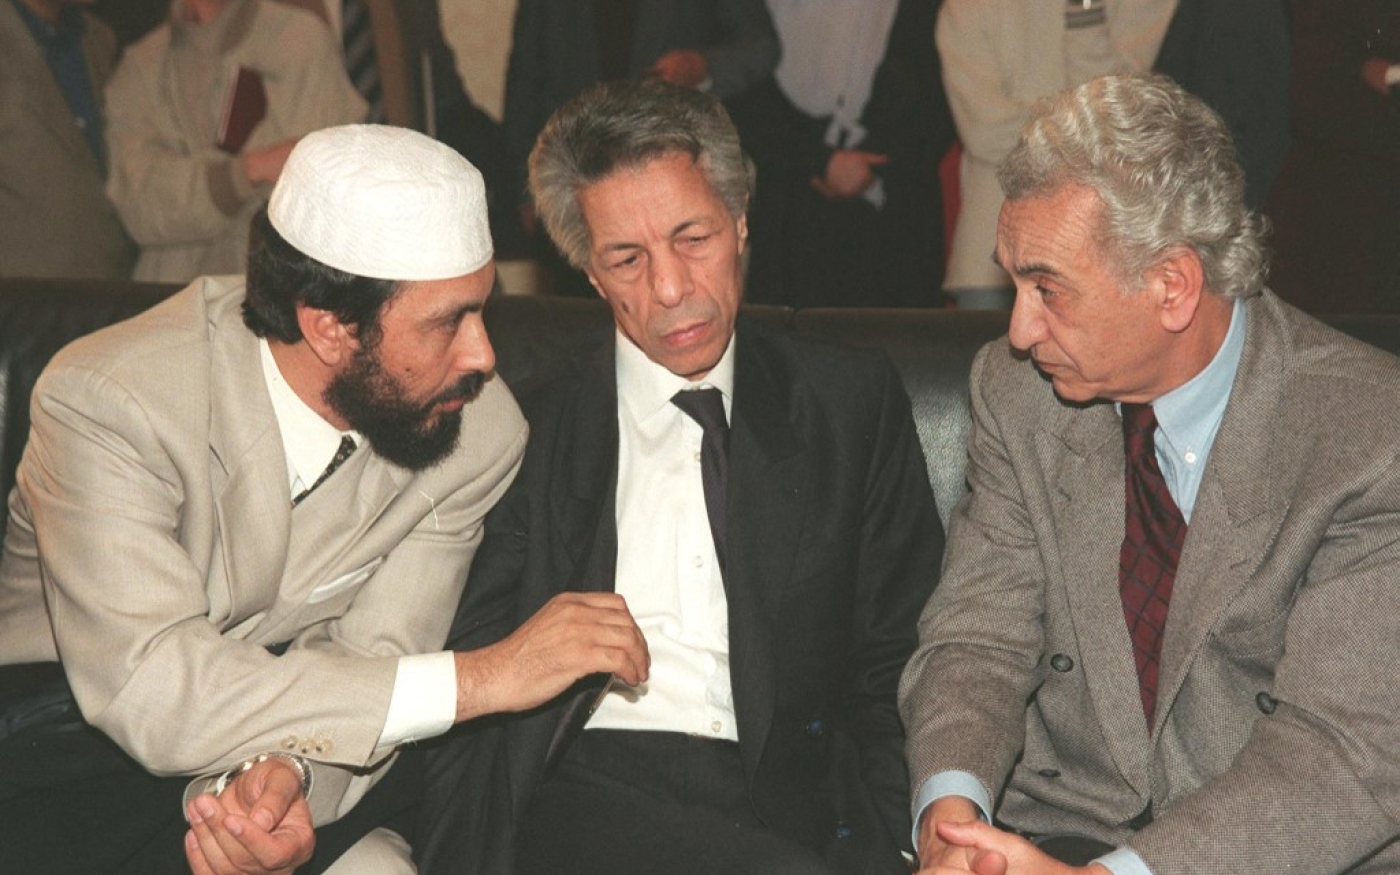 De gauche à droite : Abdallah Djaballah, Mouloud Hamrouche et Hocine Aït Ahmed, trois des candidats à l’élection présidentielle du 15 avril 1999, s’entretiennent à l’hôtel Sofitel d’Alger. Ils finiront par se retirer de la course (AFP)